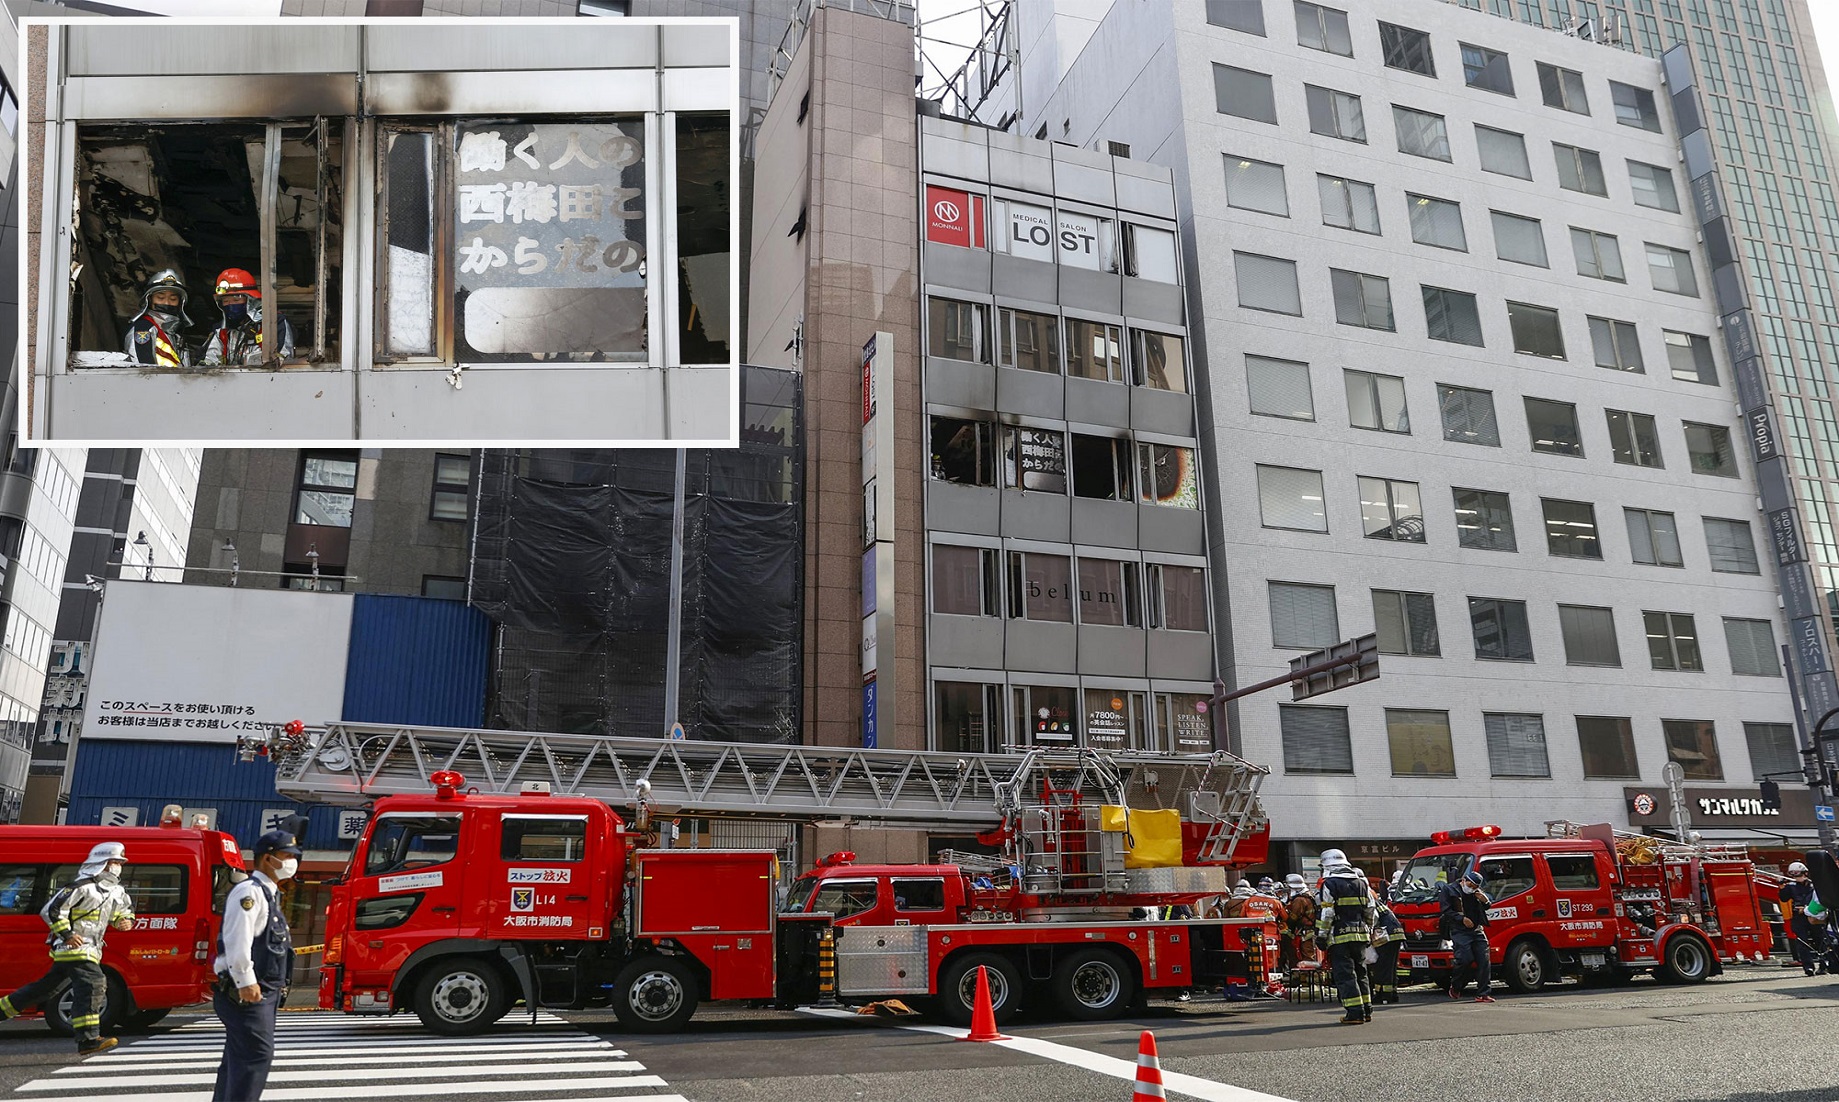 27 Feared Dead As Fire Breaks Out In Building In Osaka